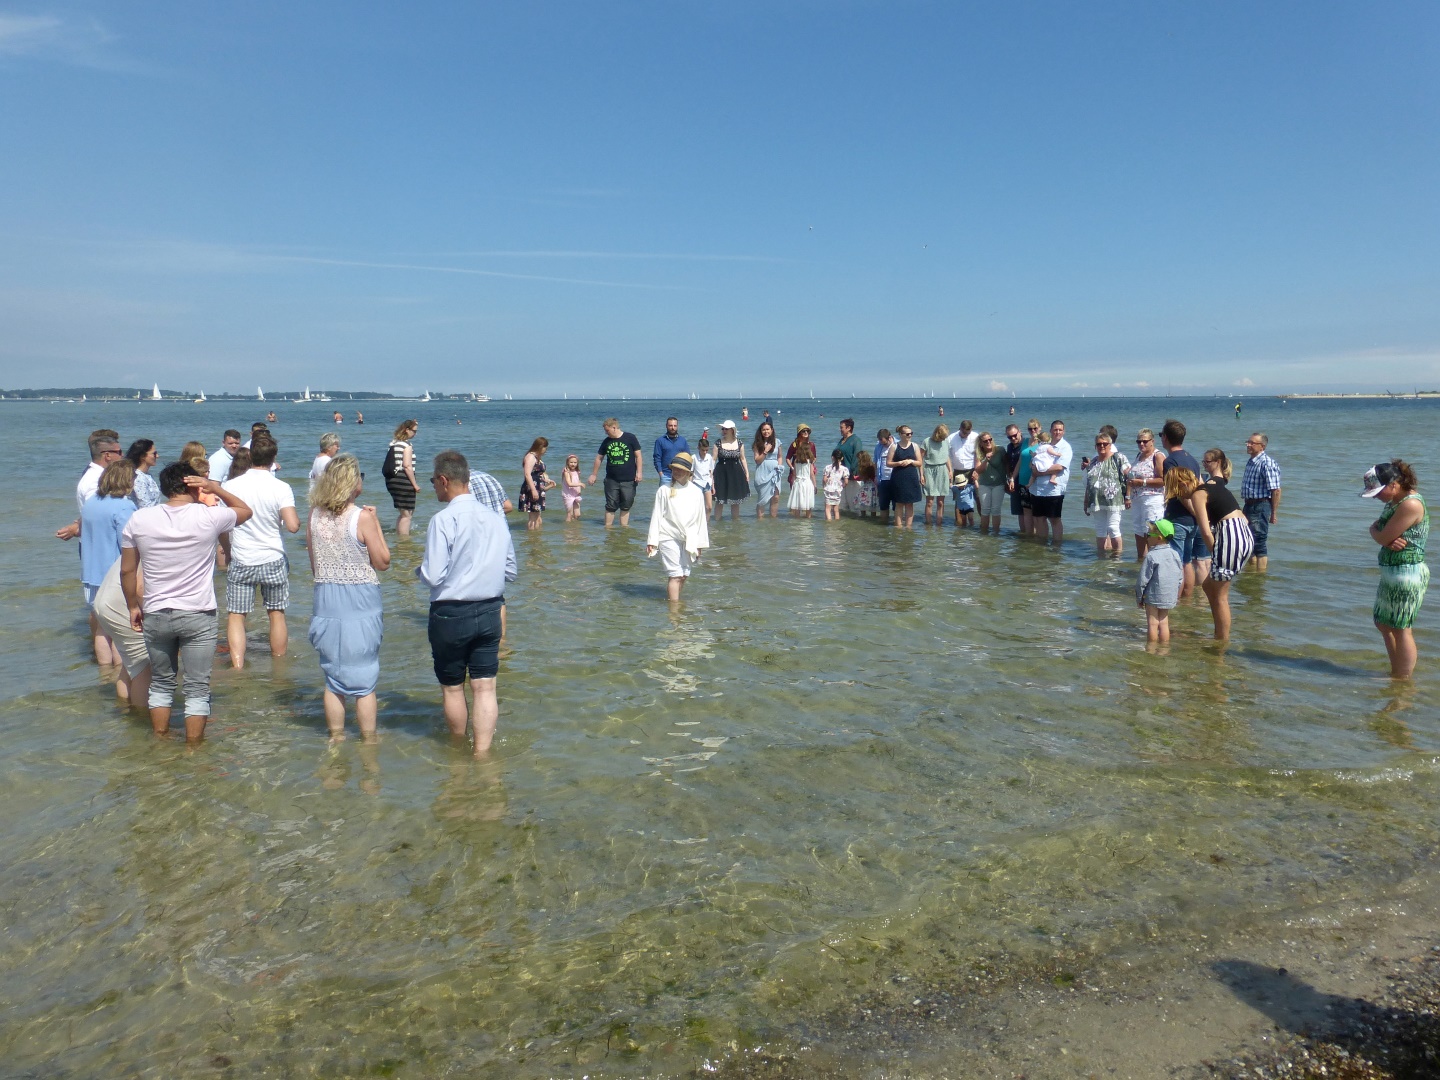 09 nun heißt es antreten zur Ostsee-Taufe